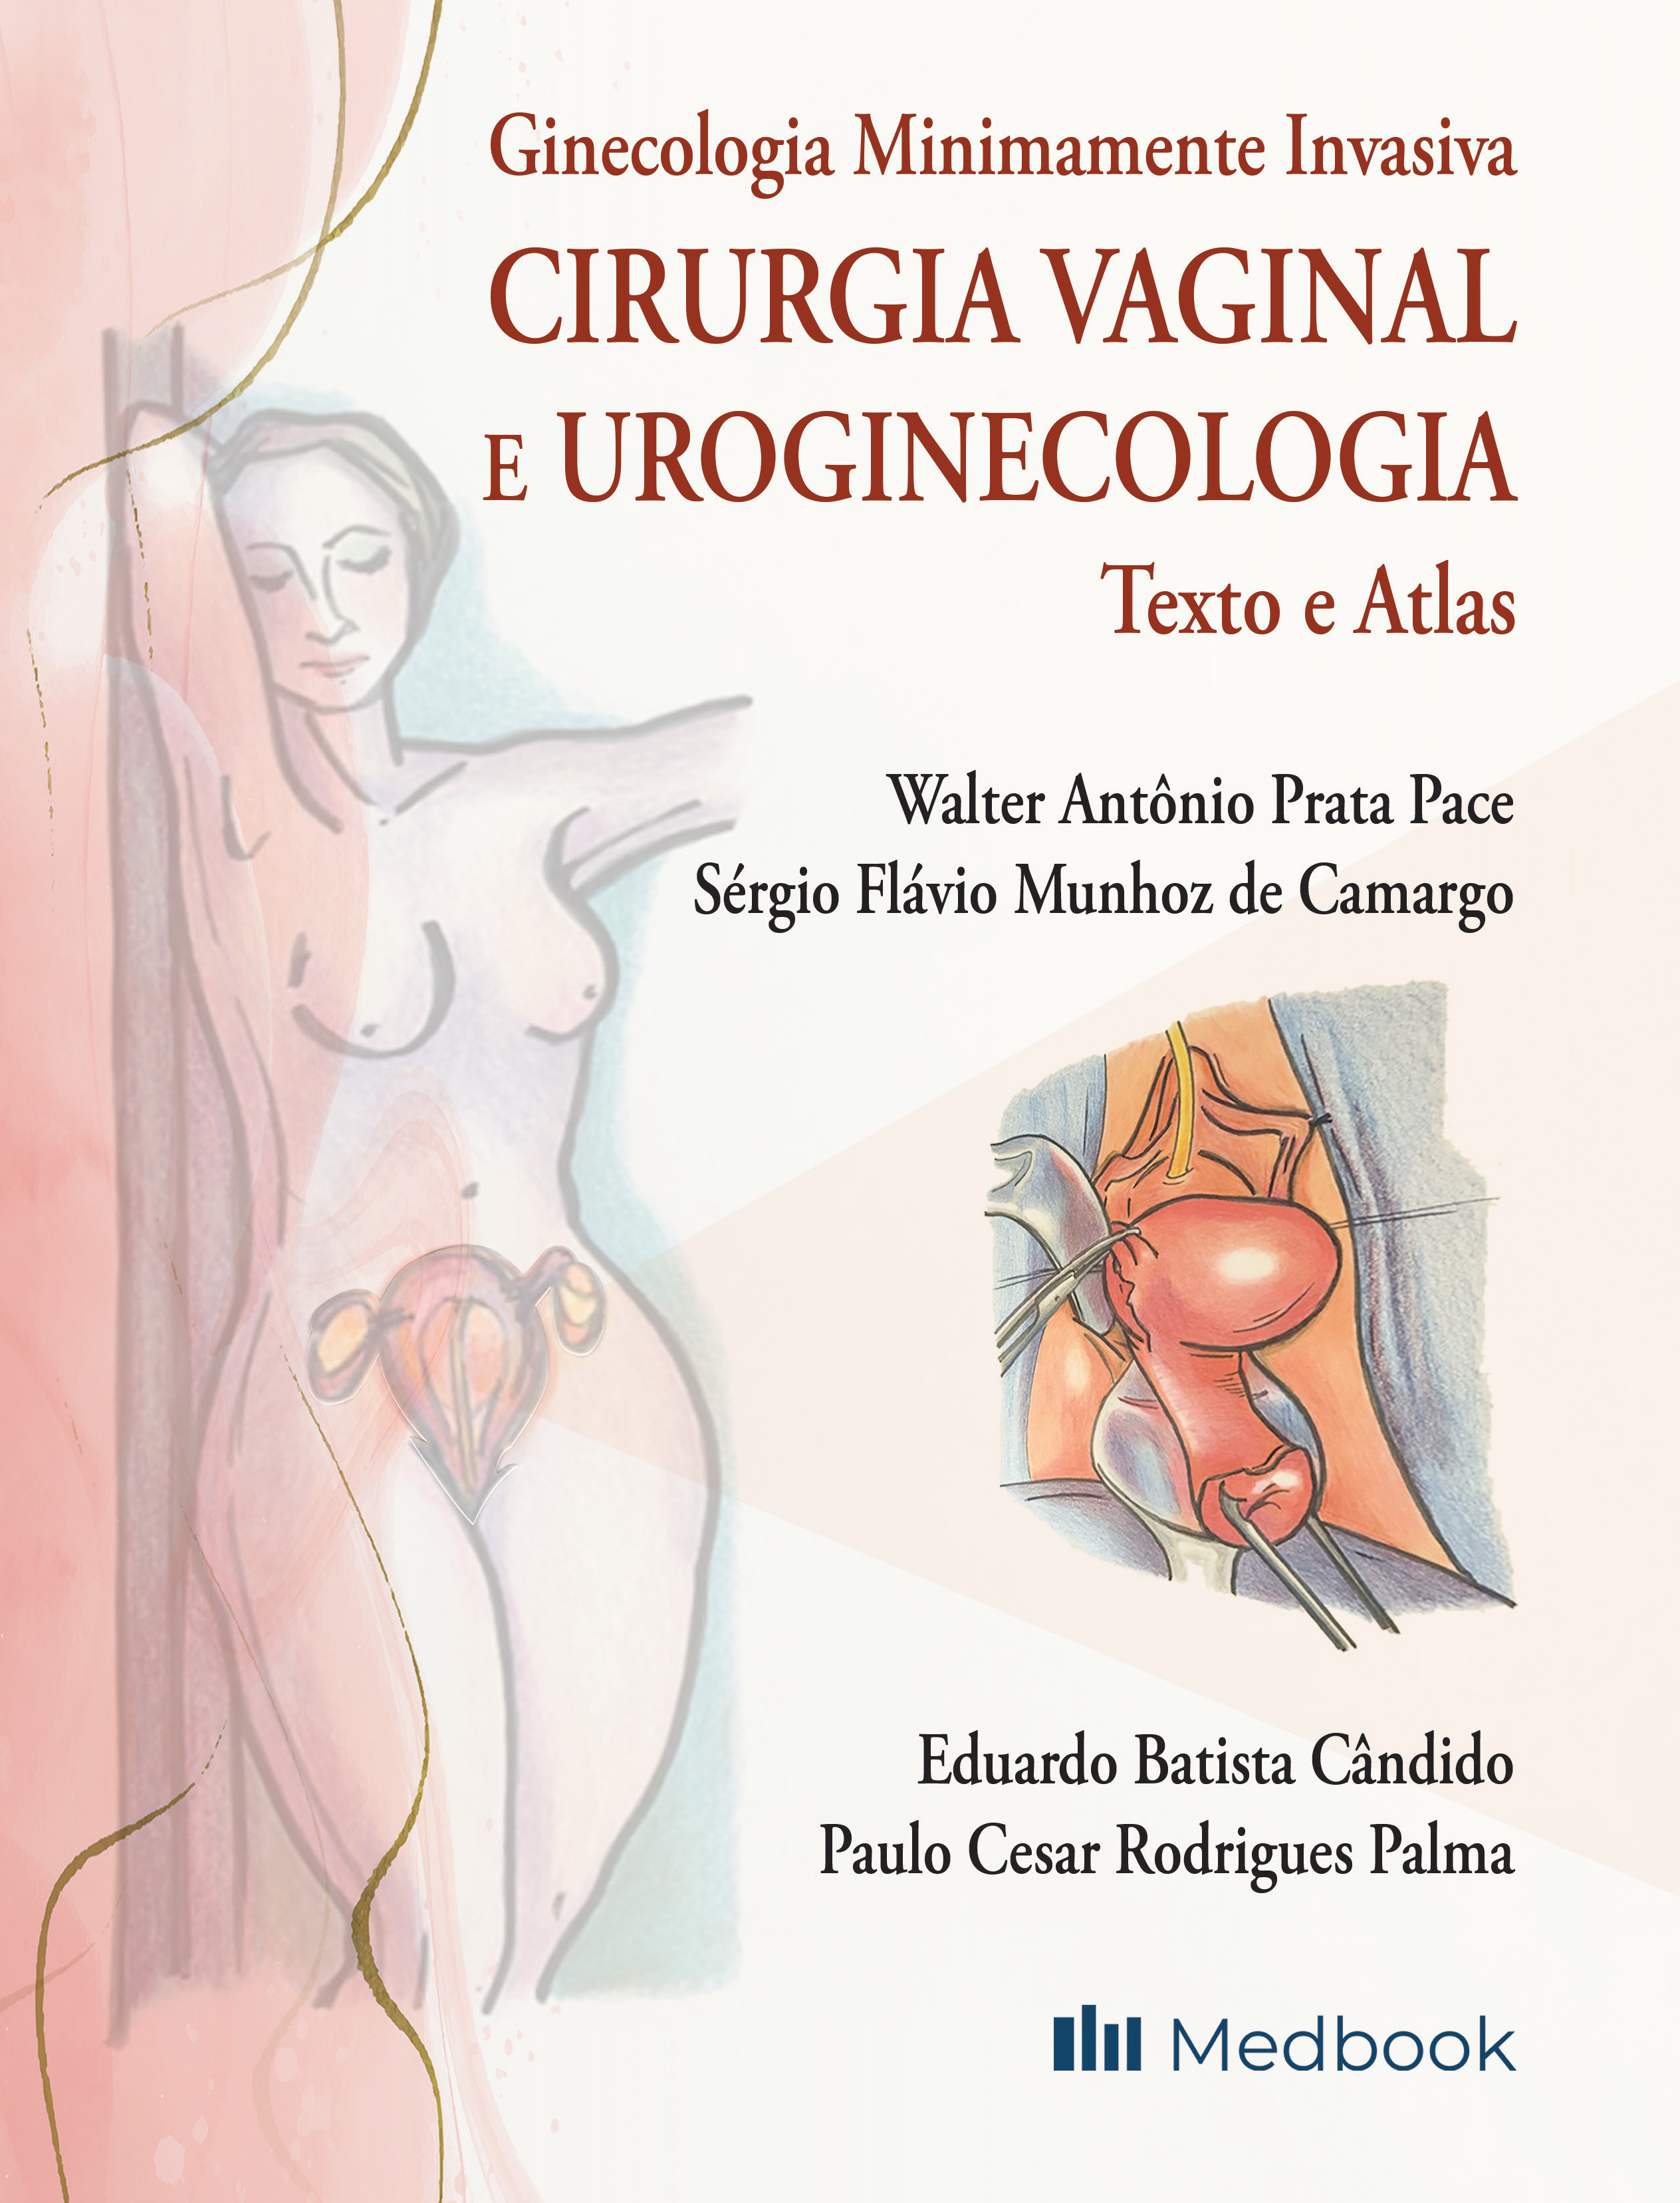 Ginecologia Minimamente Invasiva: Cirurgia Vaginal E Uroginecologia